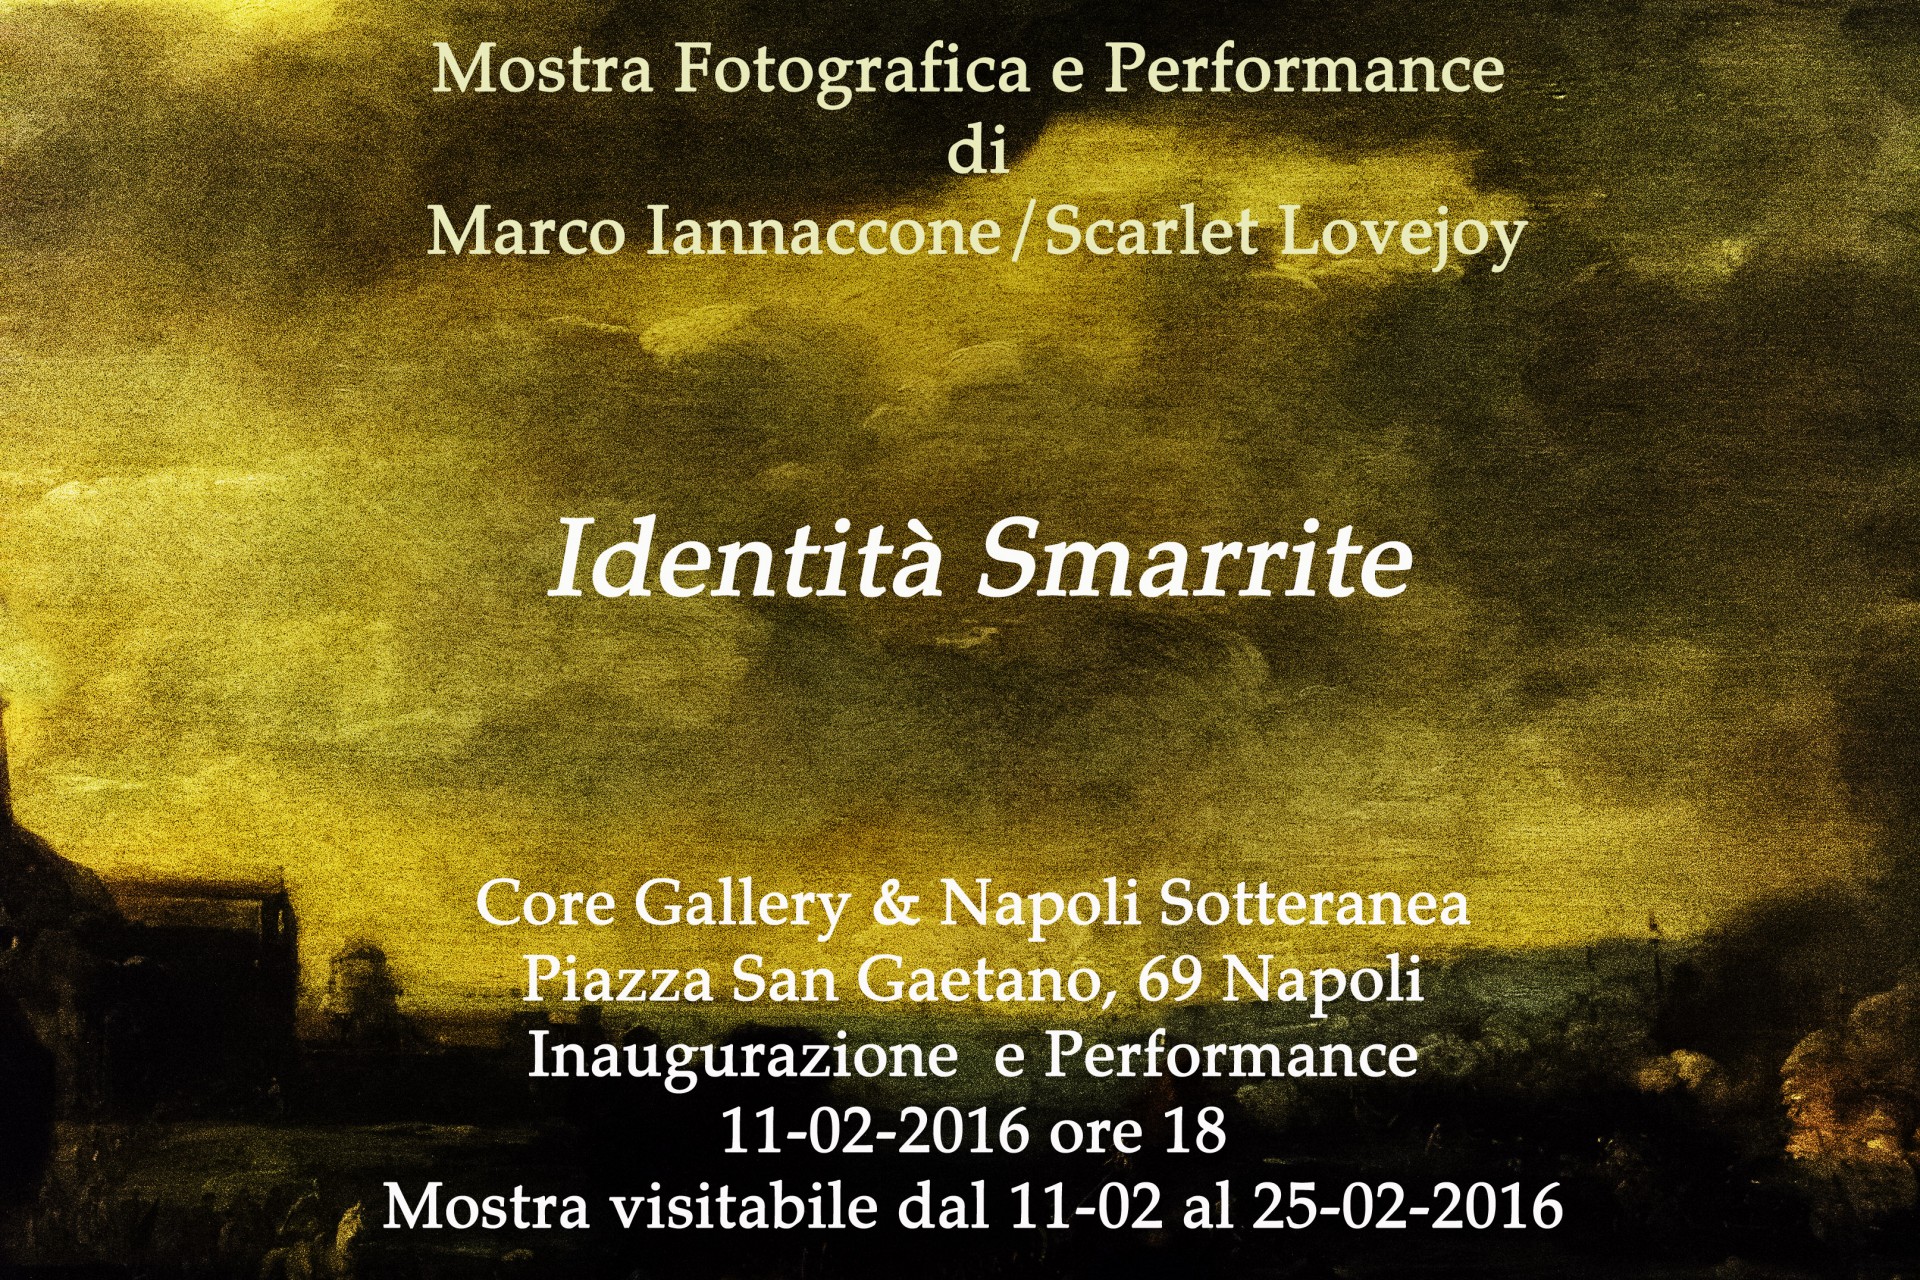 Marco Iannaccone / Scarlet Lovejoy